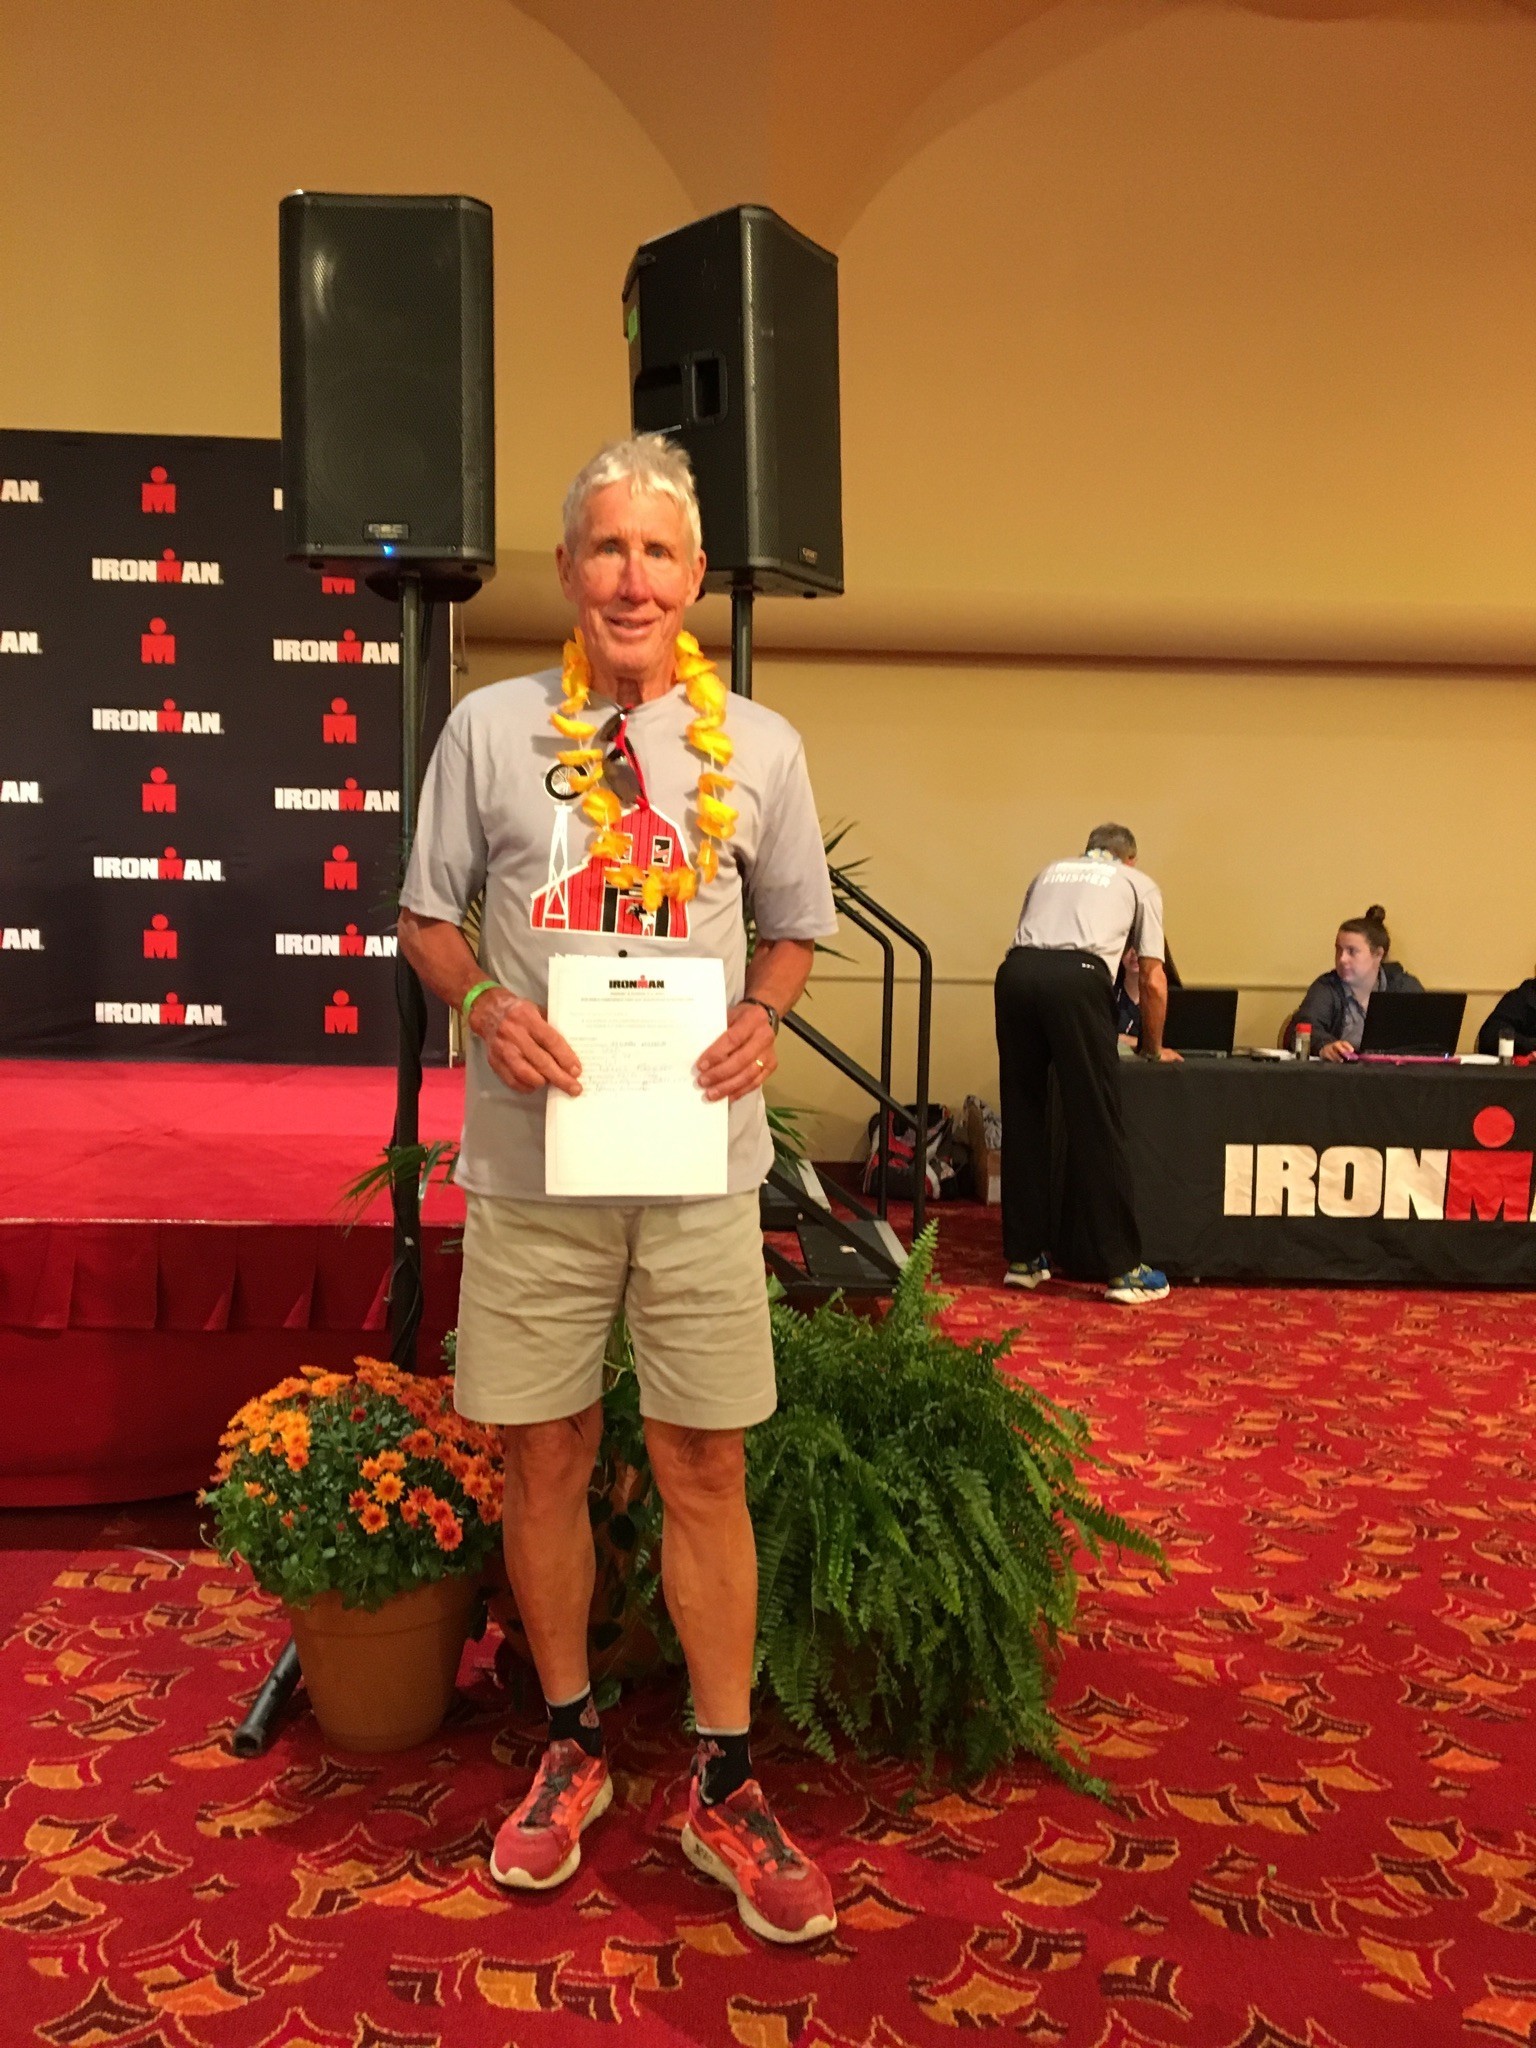 Dennis Kasischke qualified for Ironman Kona 2018.